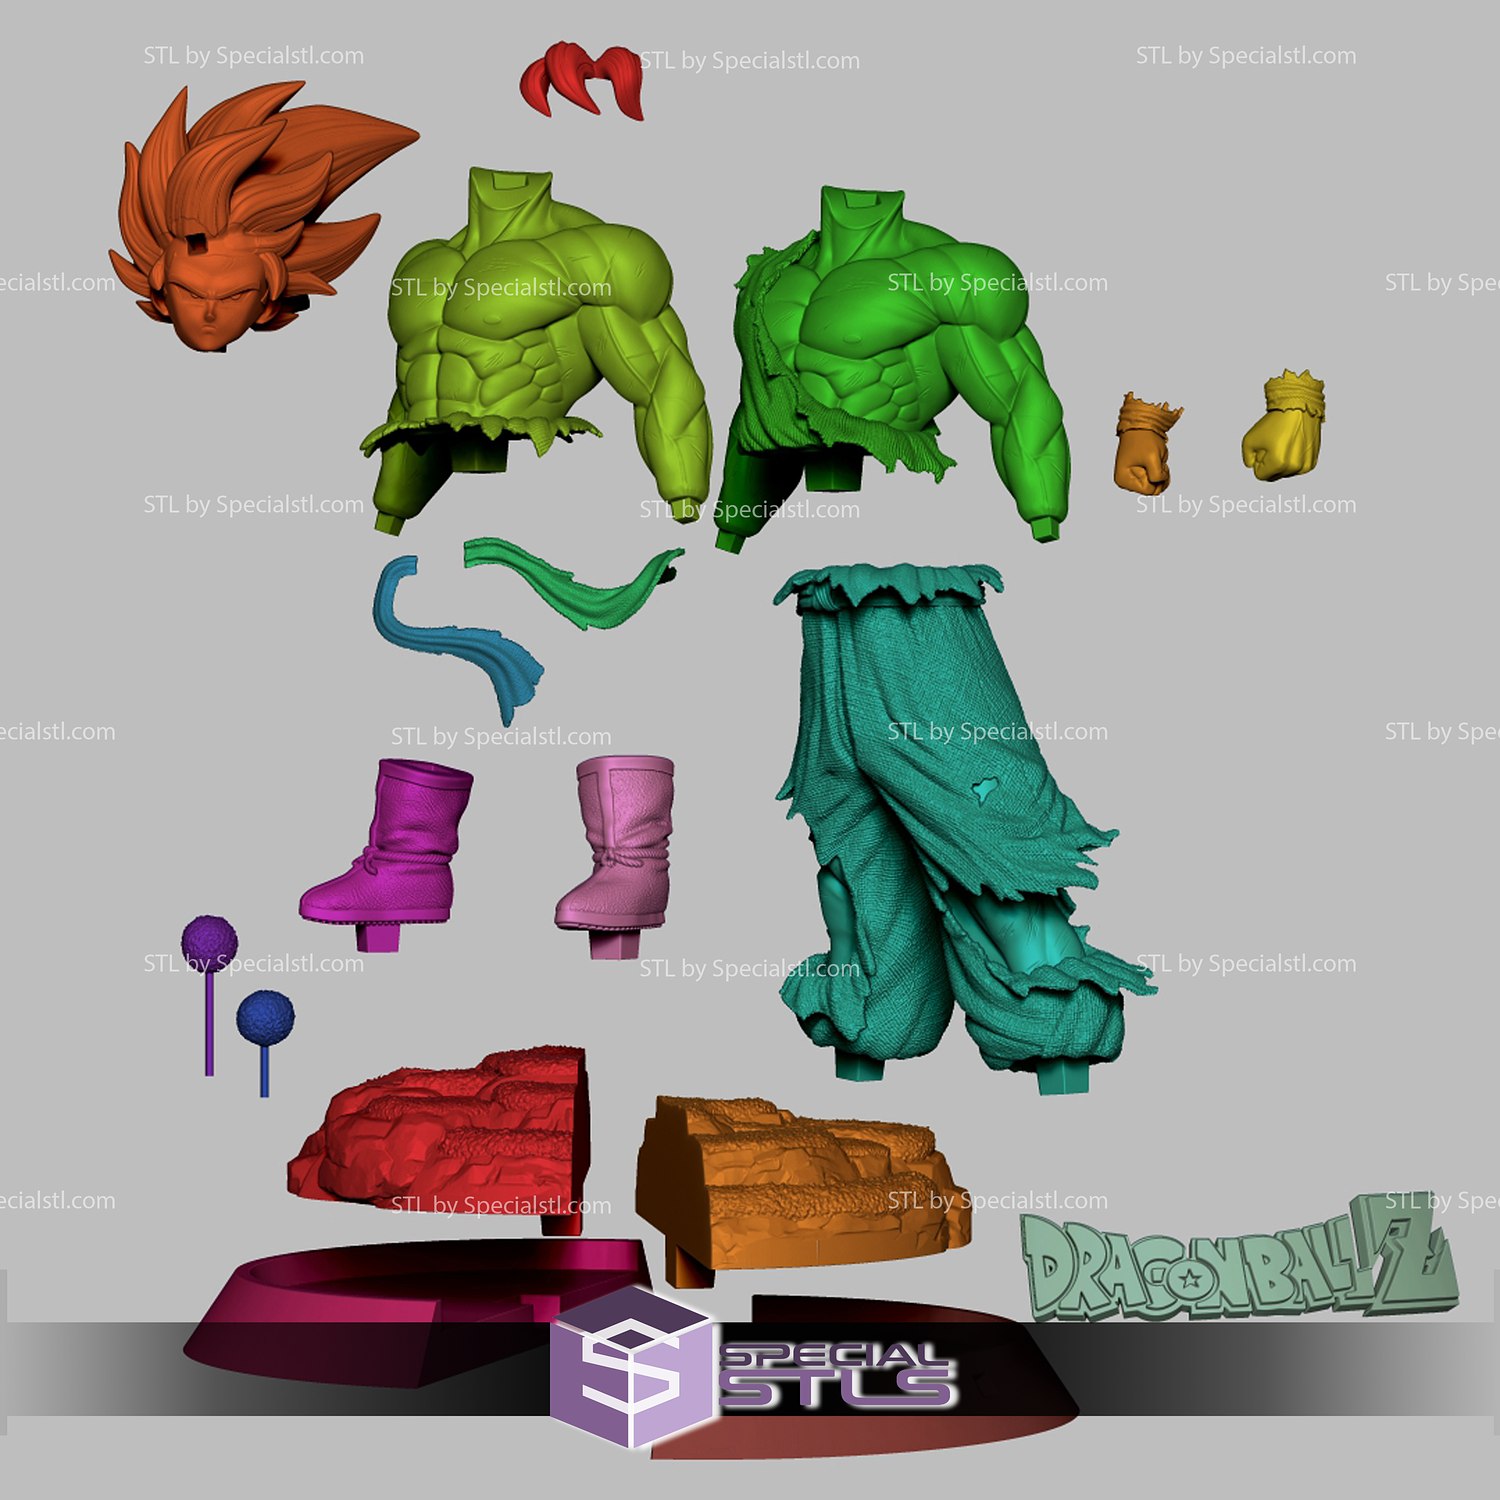 Son Goku Super Saiyan No Shirt 3D Printing Model Dragonball STL Files